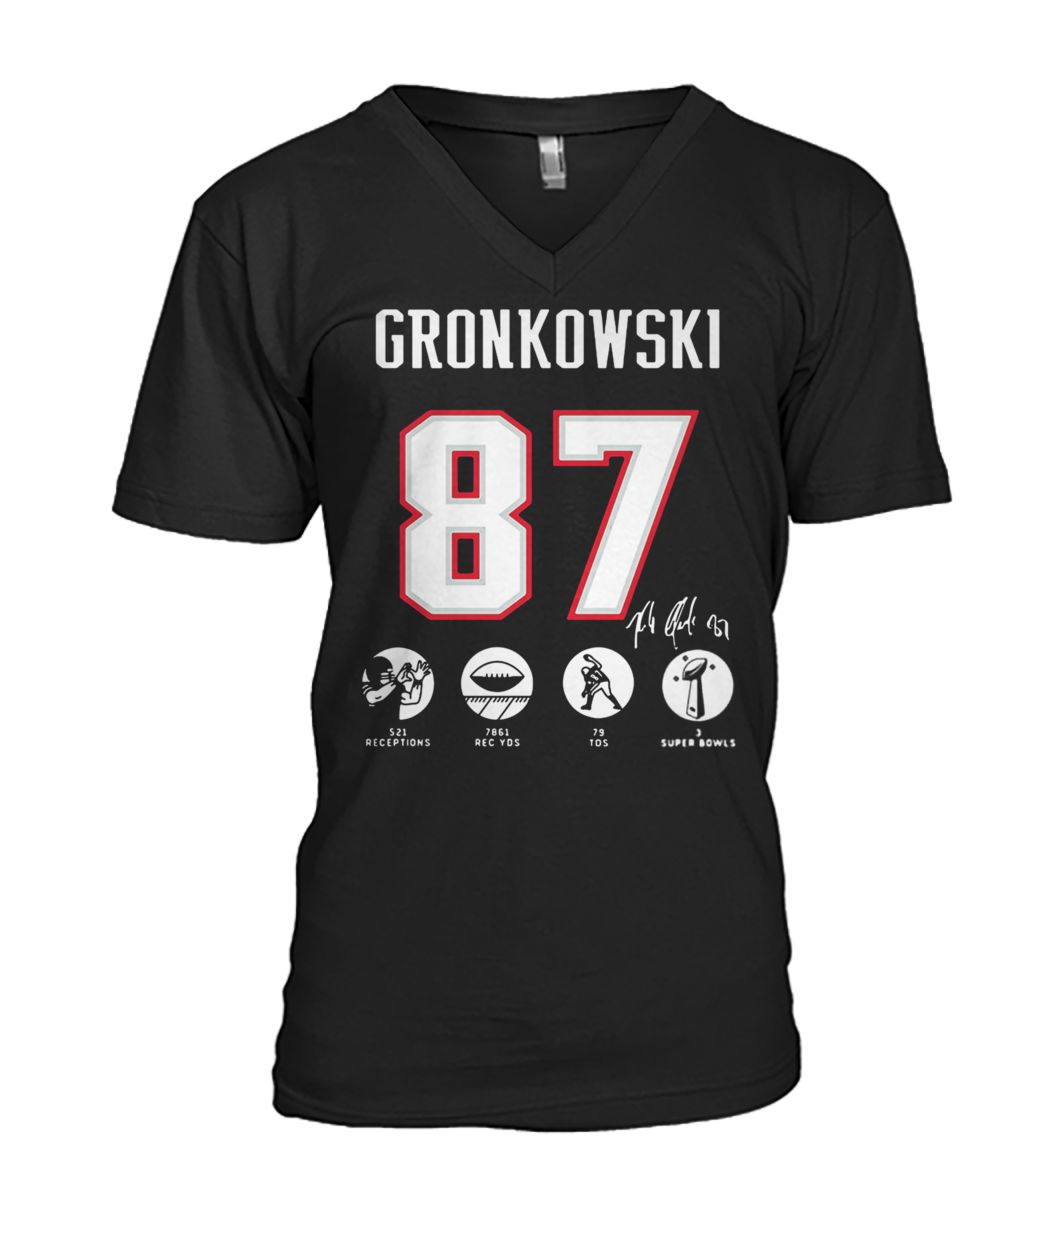 NFL rob gronkowski 87 521 receptions 7861 rec yds 79 tds 3 super bowls mens v-neck